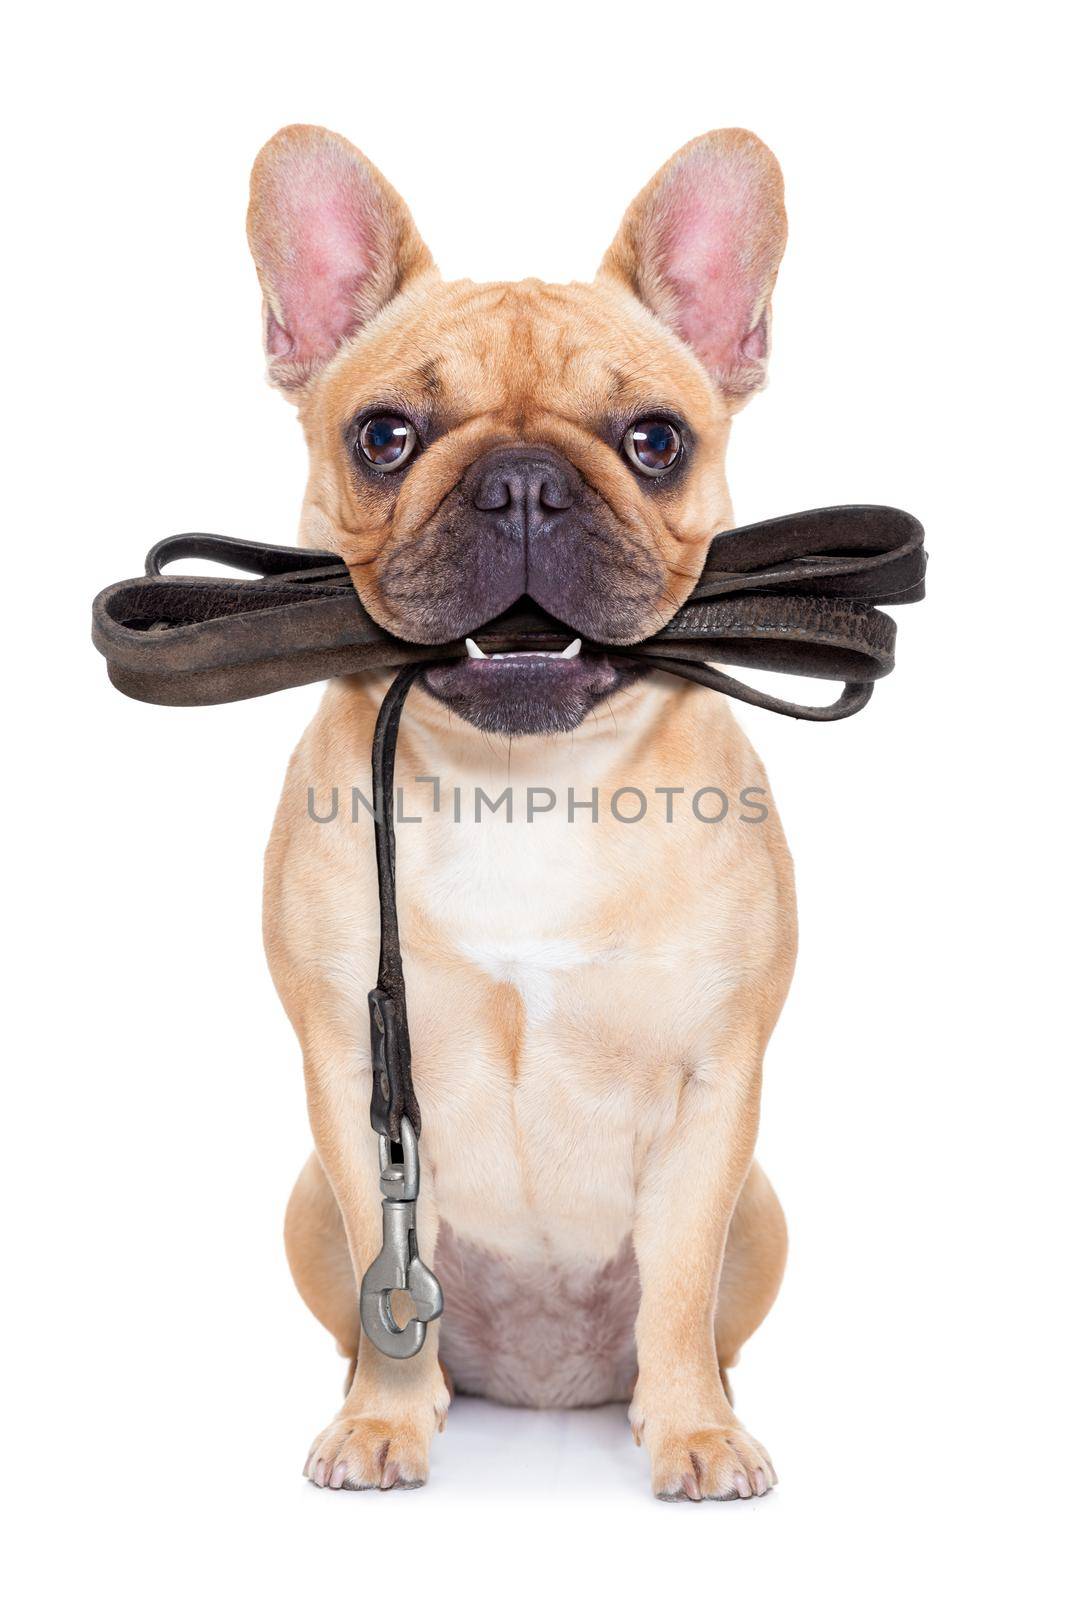 leash dog ready for a walk by Brosch